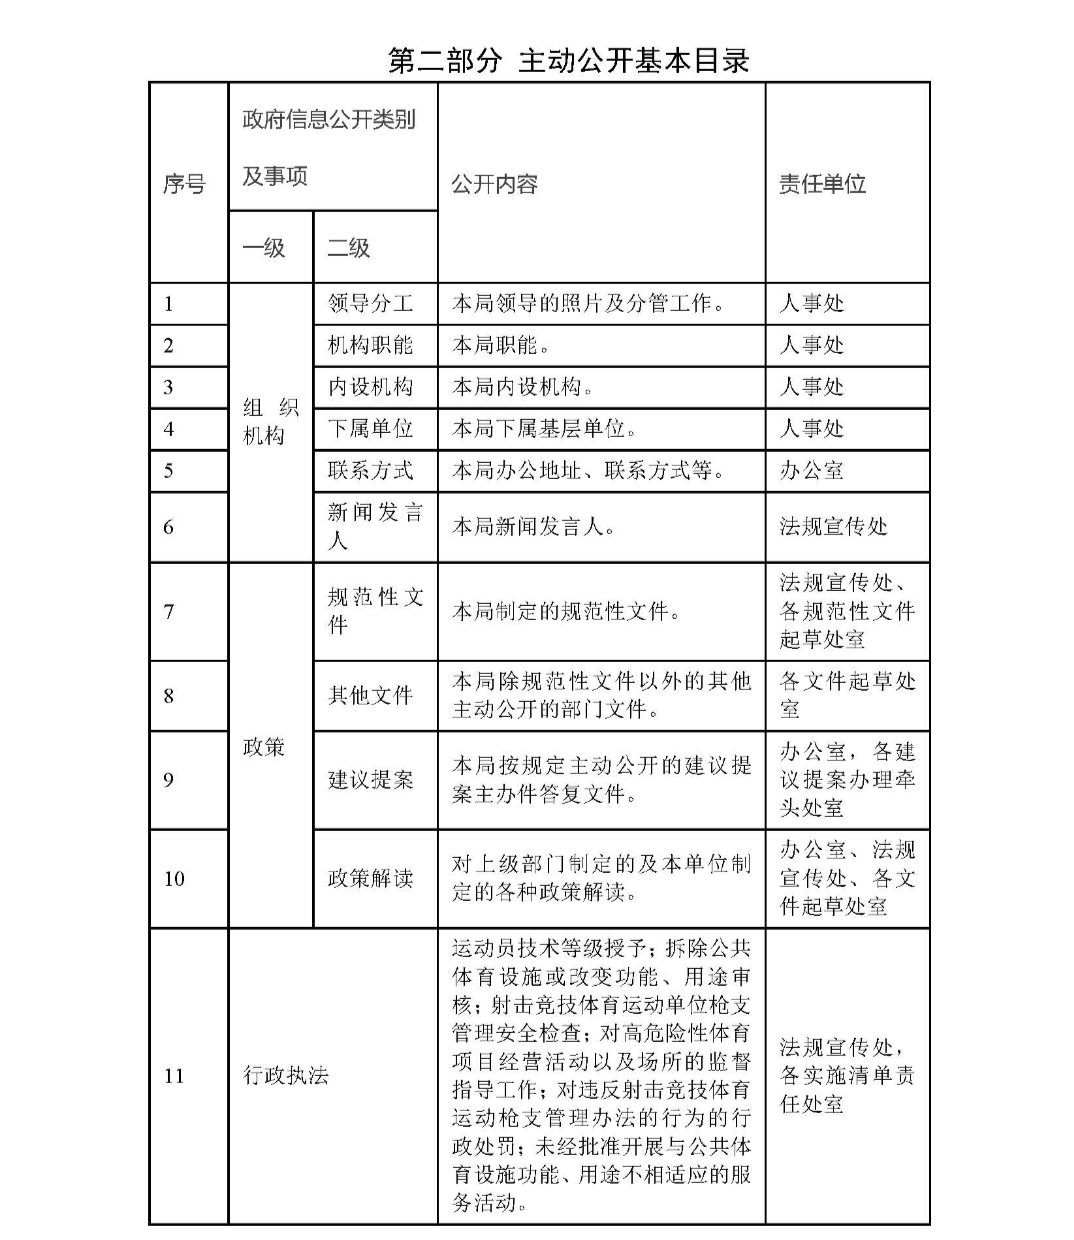 广州市体育局政府信息主动公开基本目录_页面_3.jpg